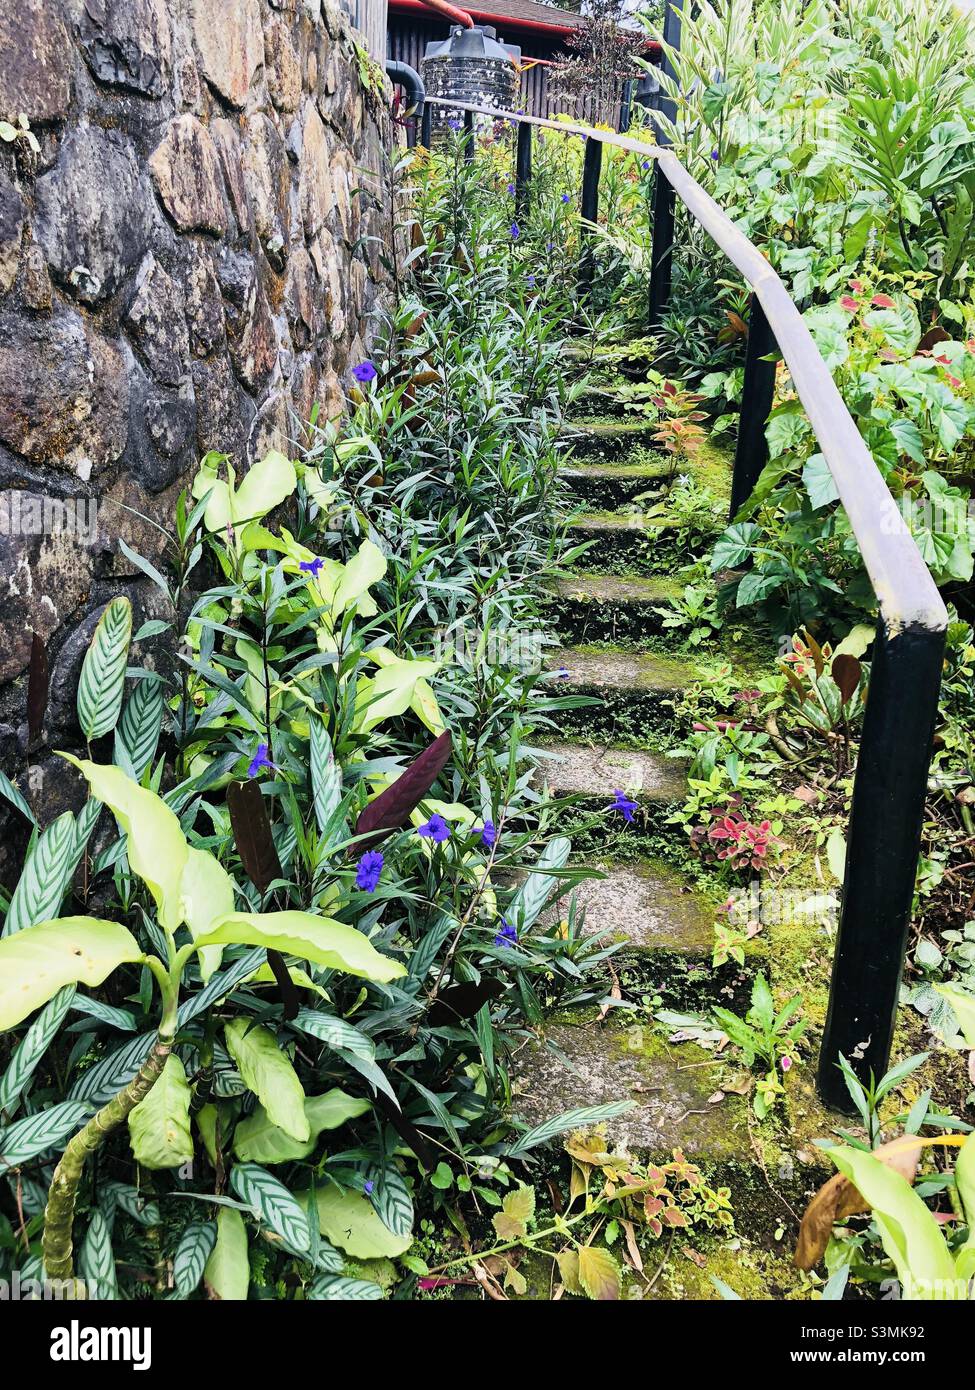 Tropical garden steps Stock Photo